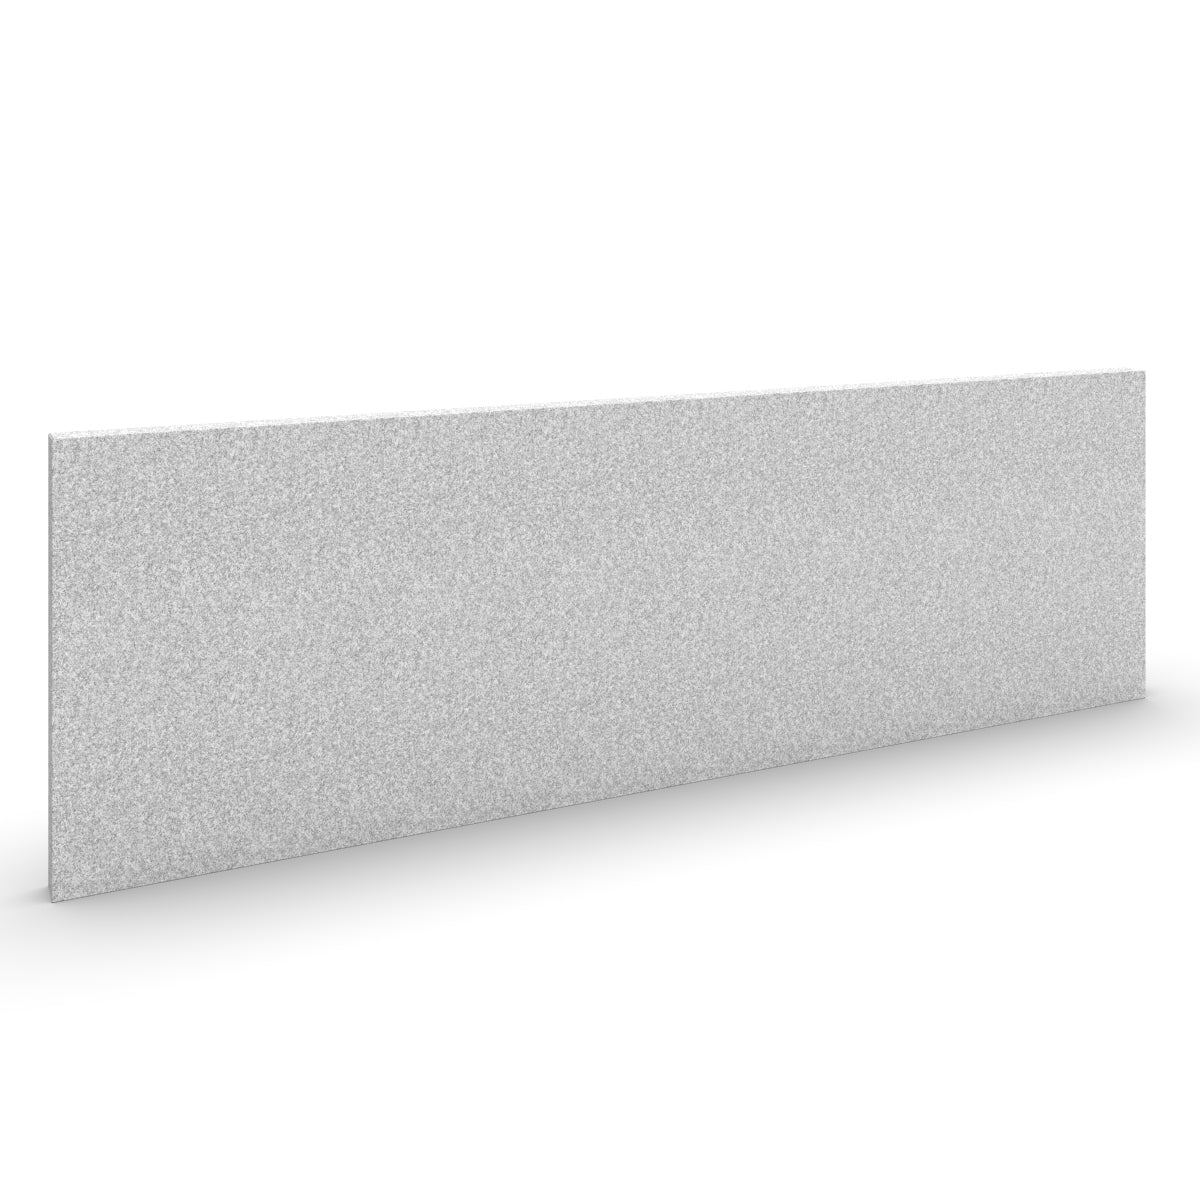 Basic wall sound absorber in light grey acoustic wool felt. Akustikkplater og lyddemping vegg